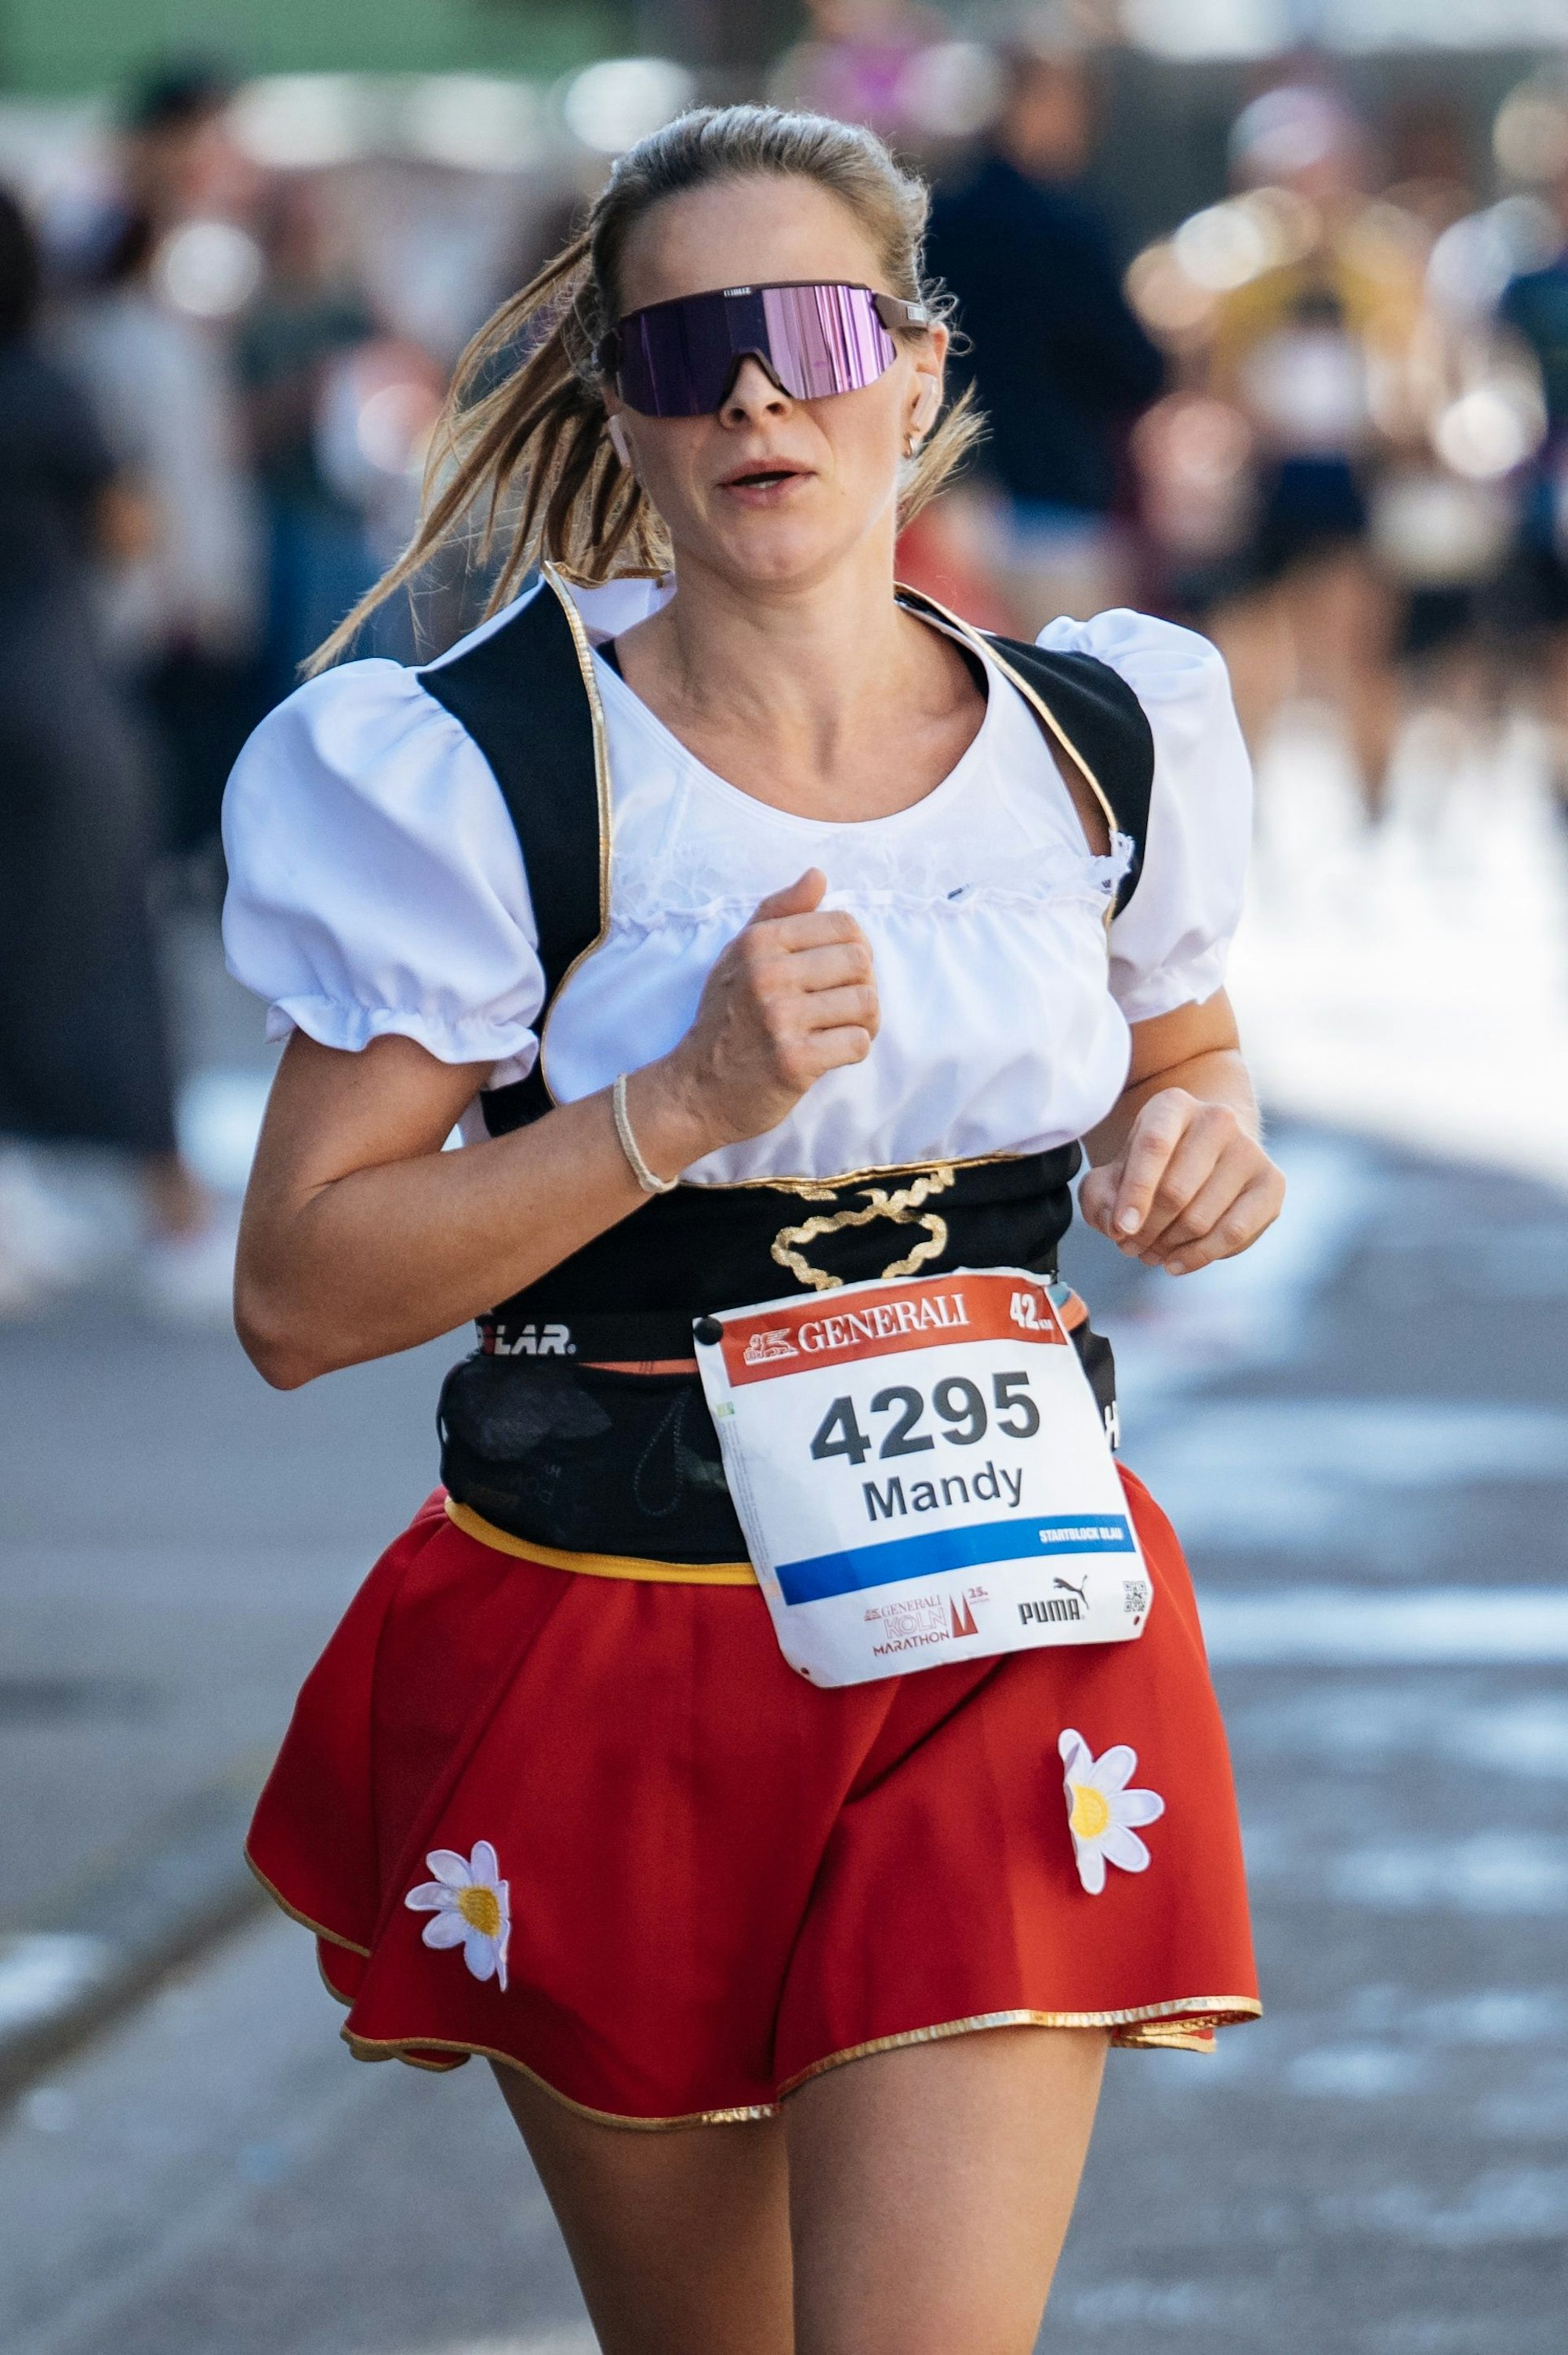 Läuferin Mandy feierte beim Marathon im Dirndl ihr Oktoberfest.